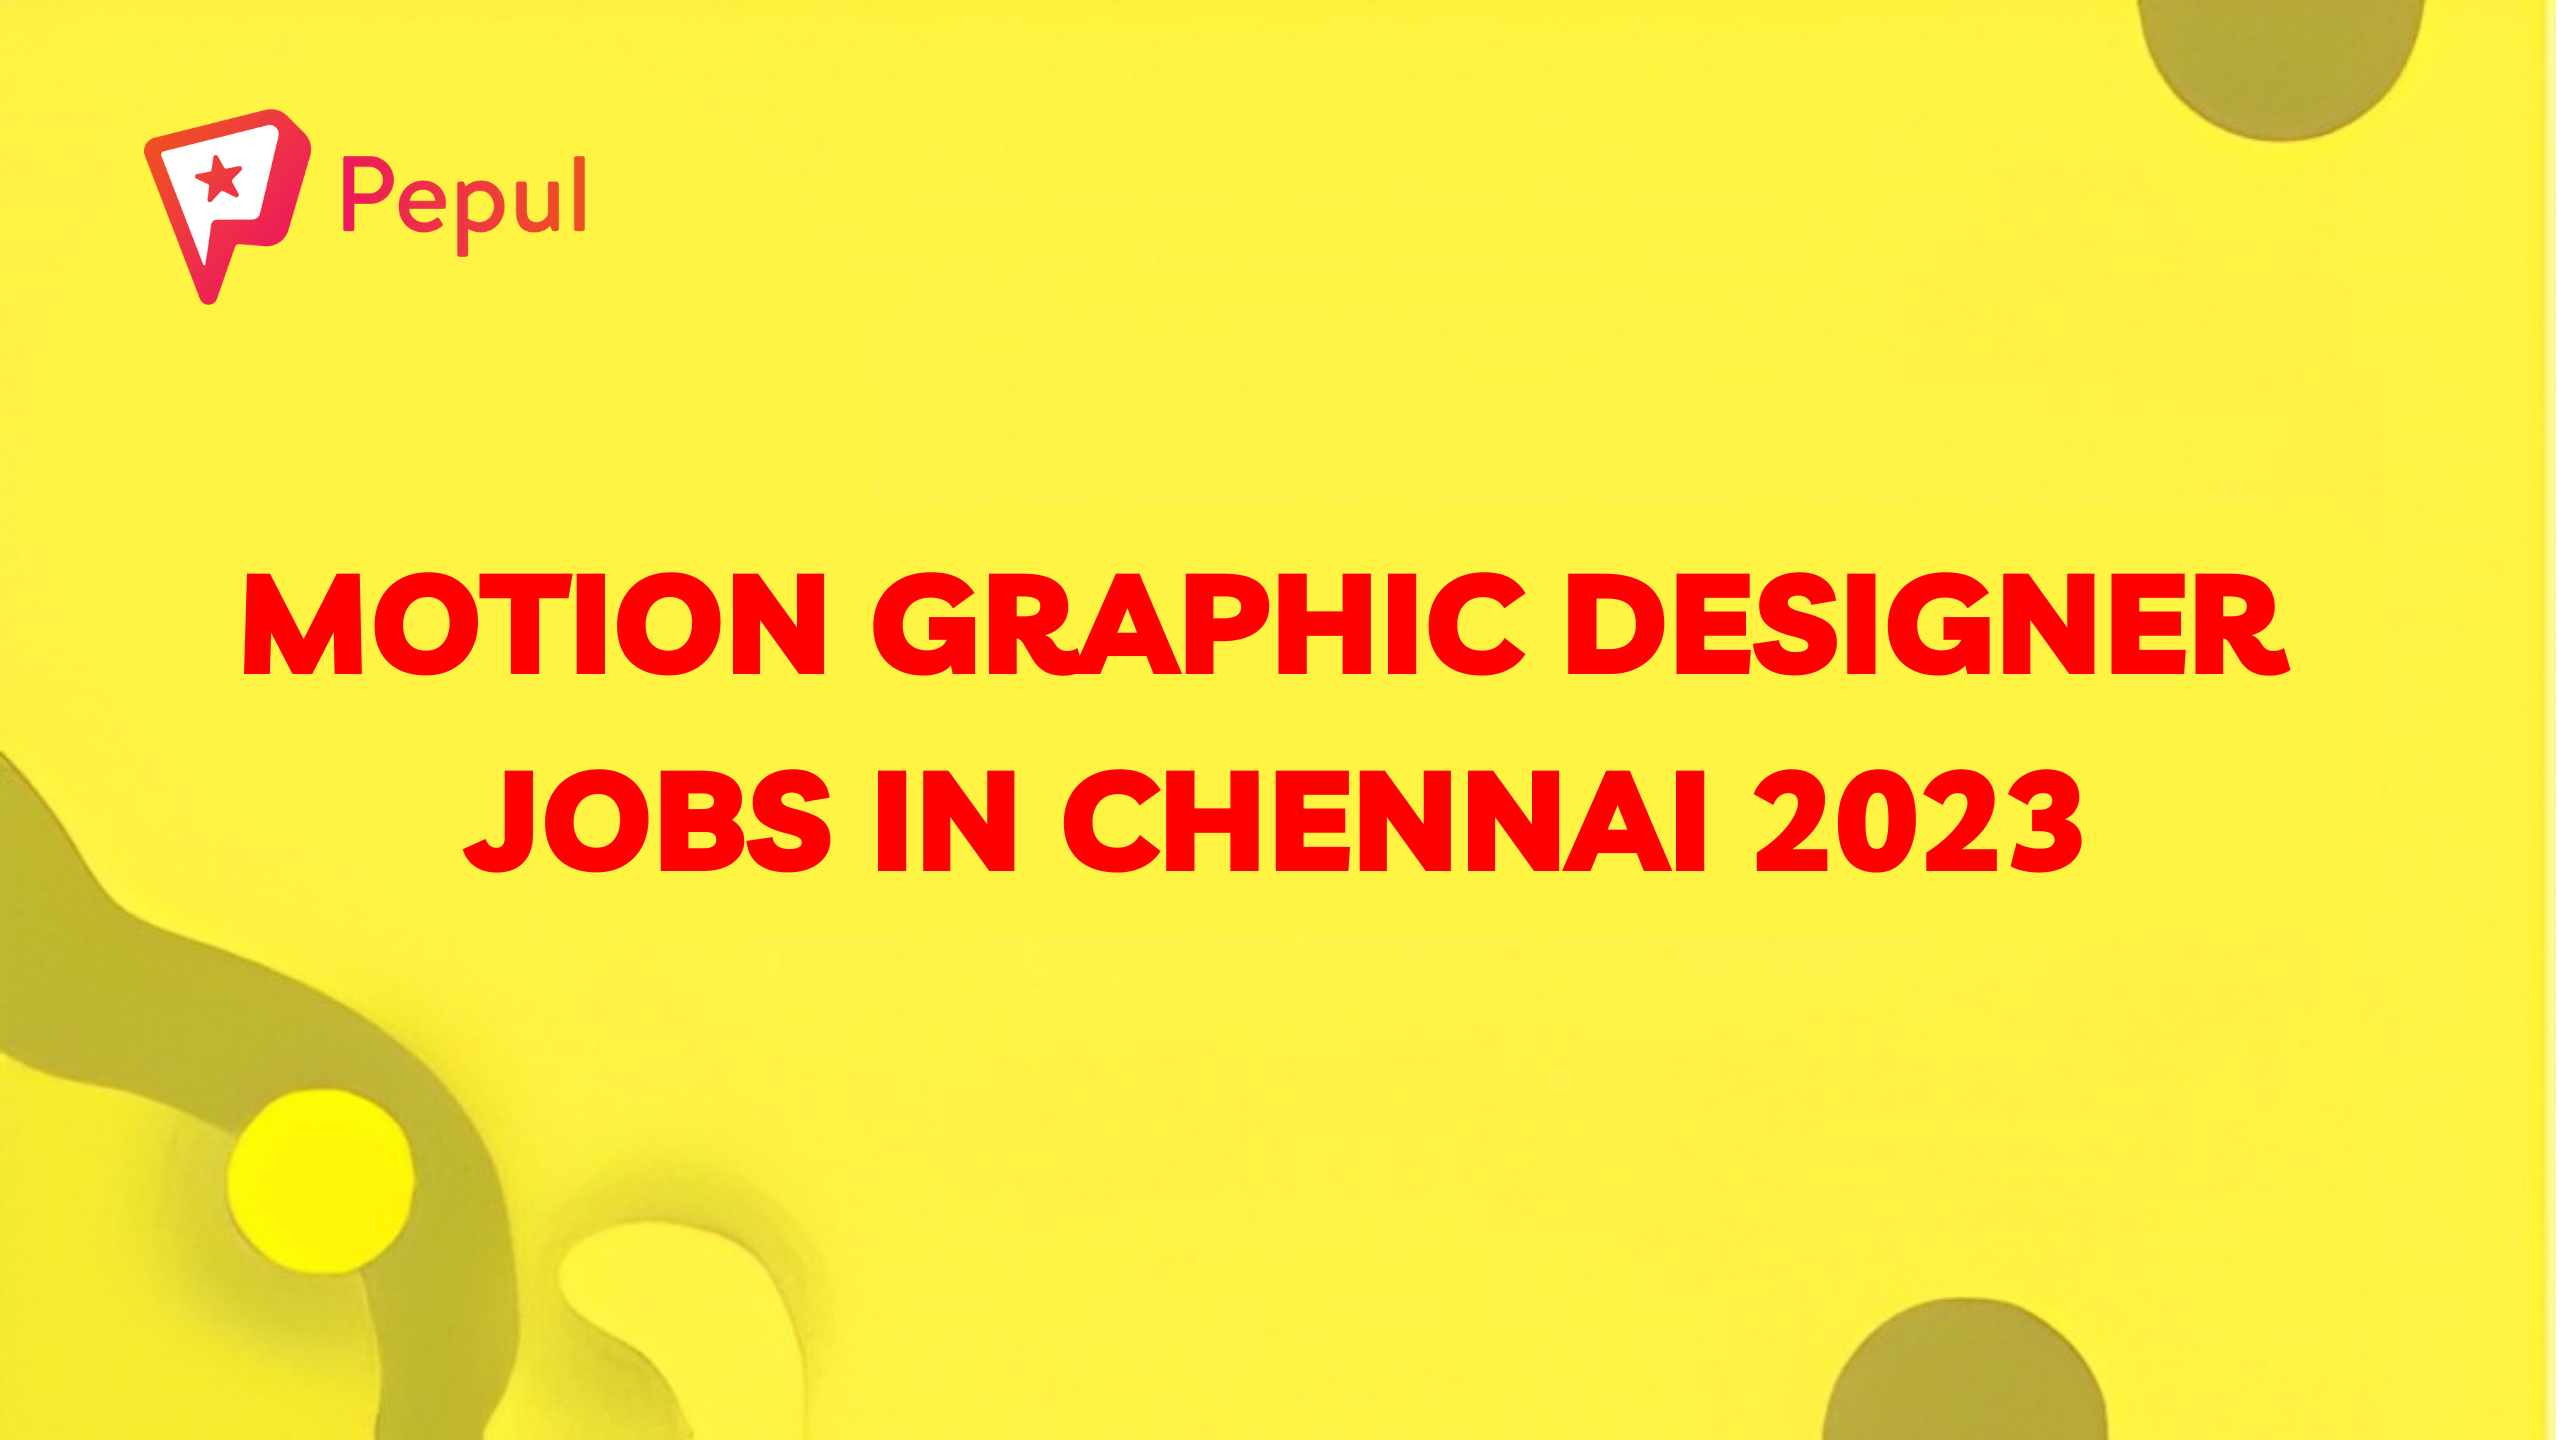 Motion Graphic Designer jobs in Chennai 2023